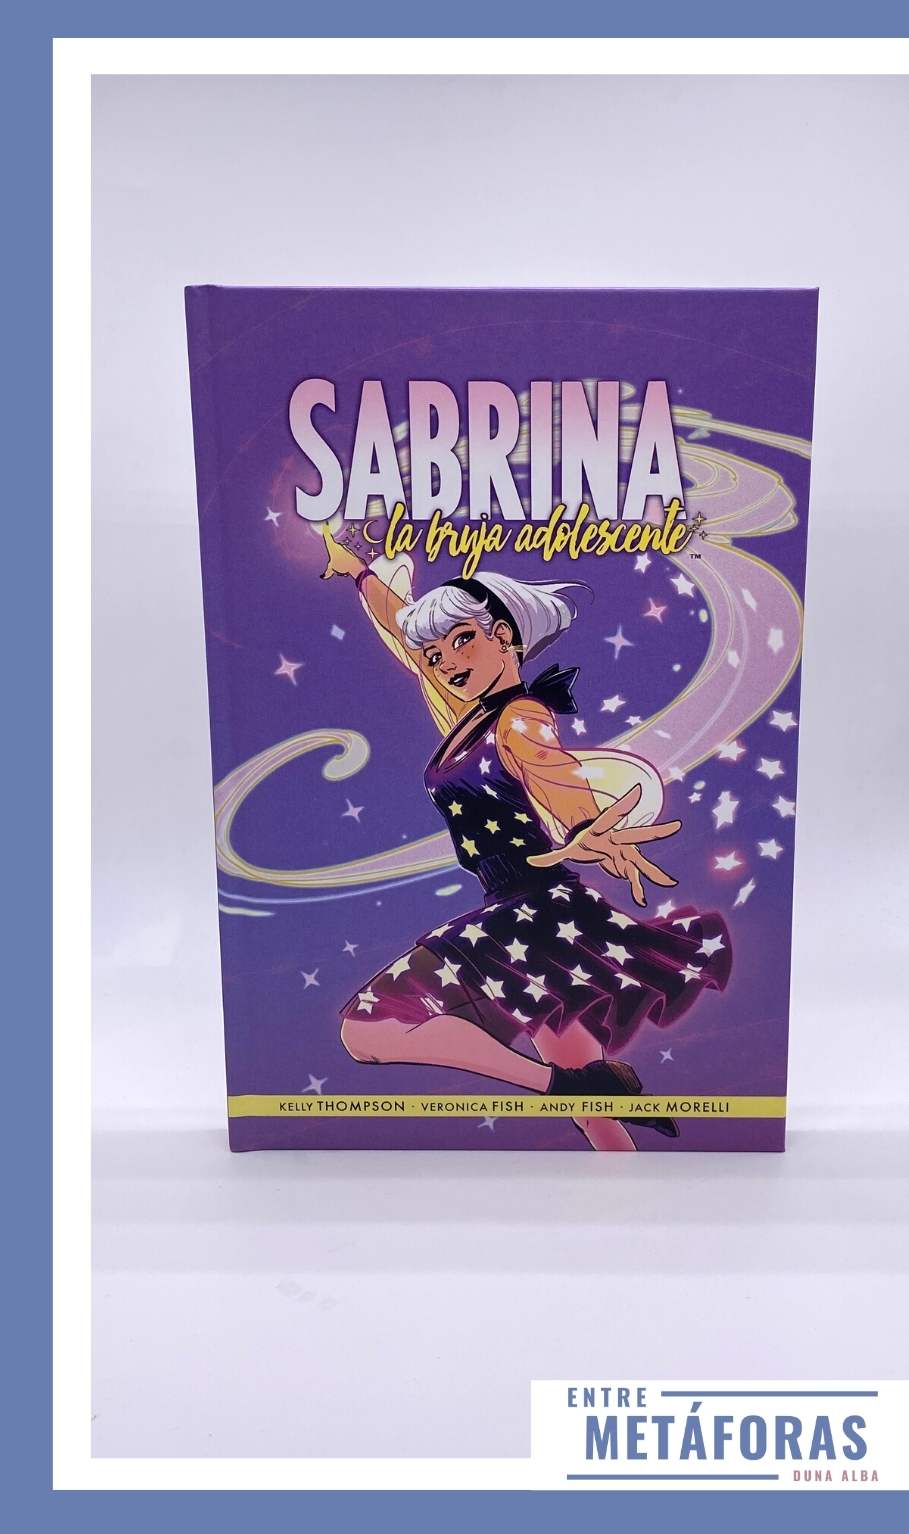 Sabrina, una bruja adolescente